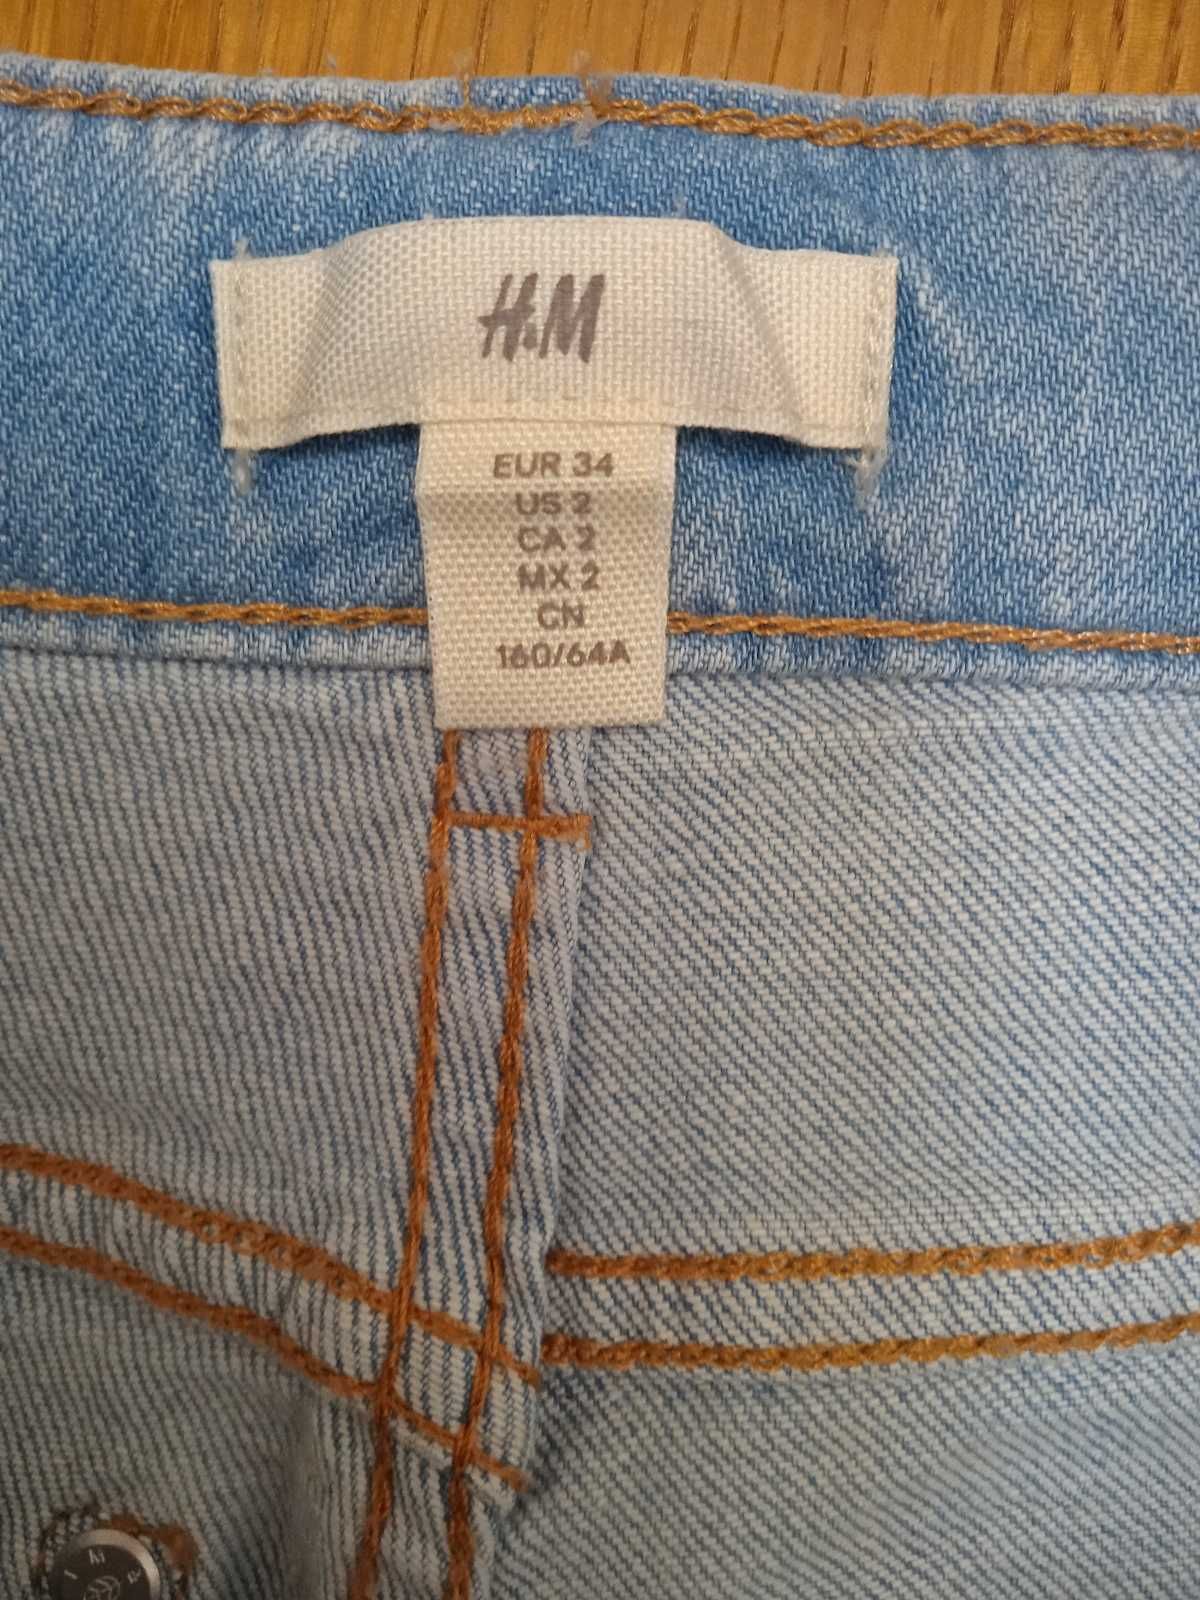 Джинси жіночі H&M Slim Regular, джинсы H&M. Оригінал. Куплені в Англії